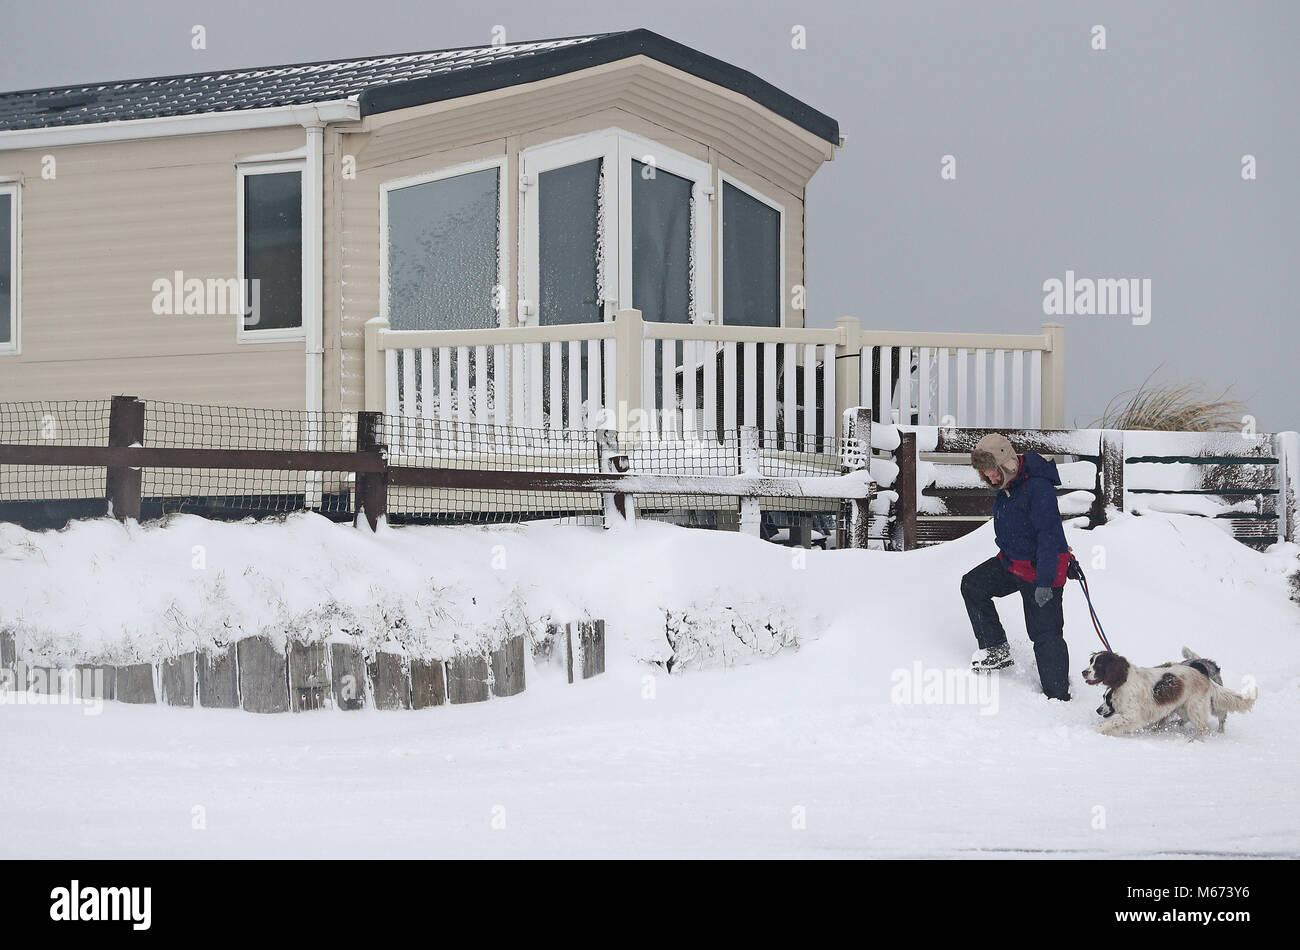 Une femme entre ses chiens dans Newbiggin-By-The-Sea dans la région de Northumberland, que storm Emma, roulant en provenance de l'Atlantique, semble prêt à affronter la bête de l'est fait froid Russie air - à l'origine de nouvelles chutes de neige généralisées et amer temperaturess. Banque D'Images